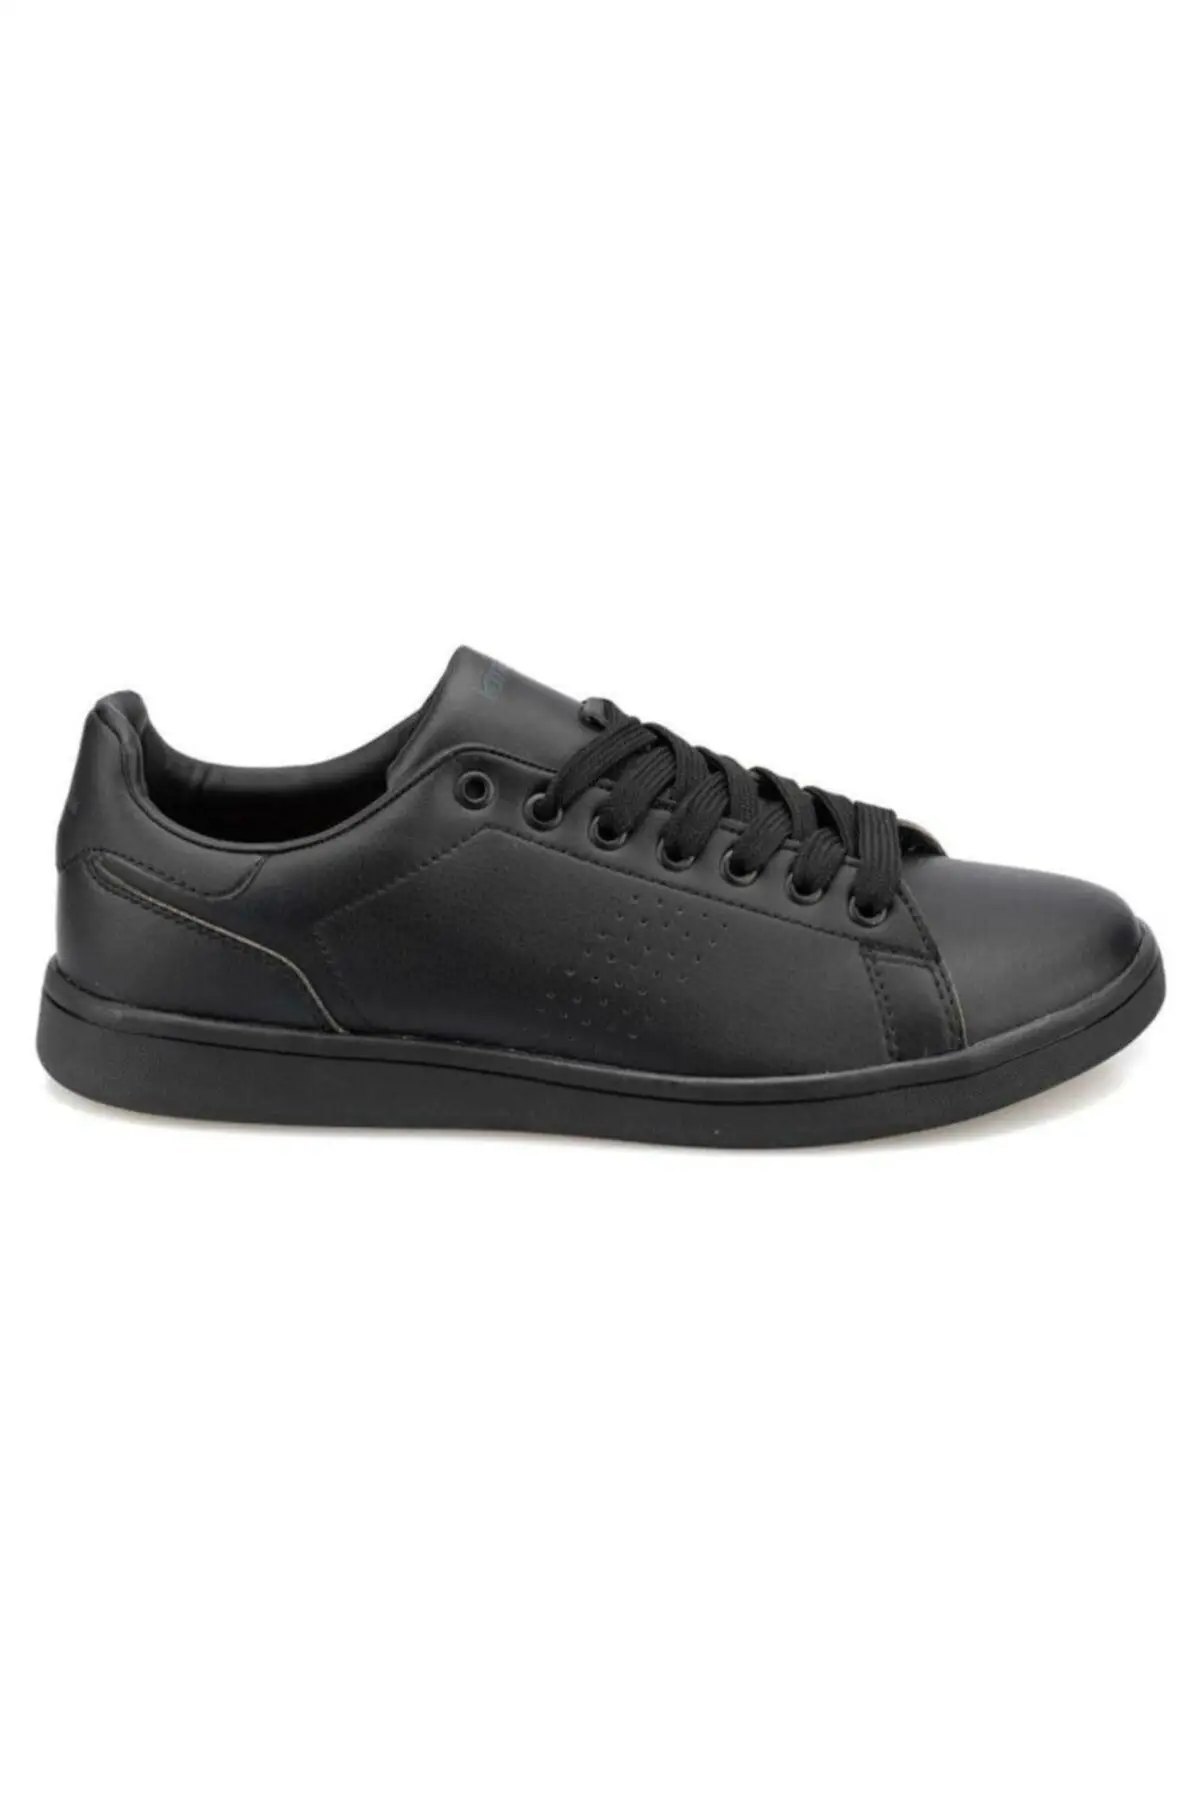 

SarEn As00280332 100430629 Plan M 9pr Male Sports Shoes Black (Kinetix)